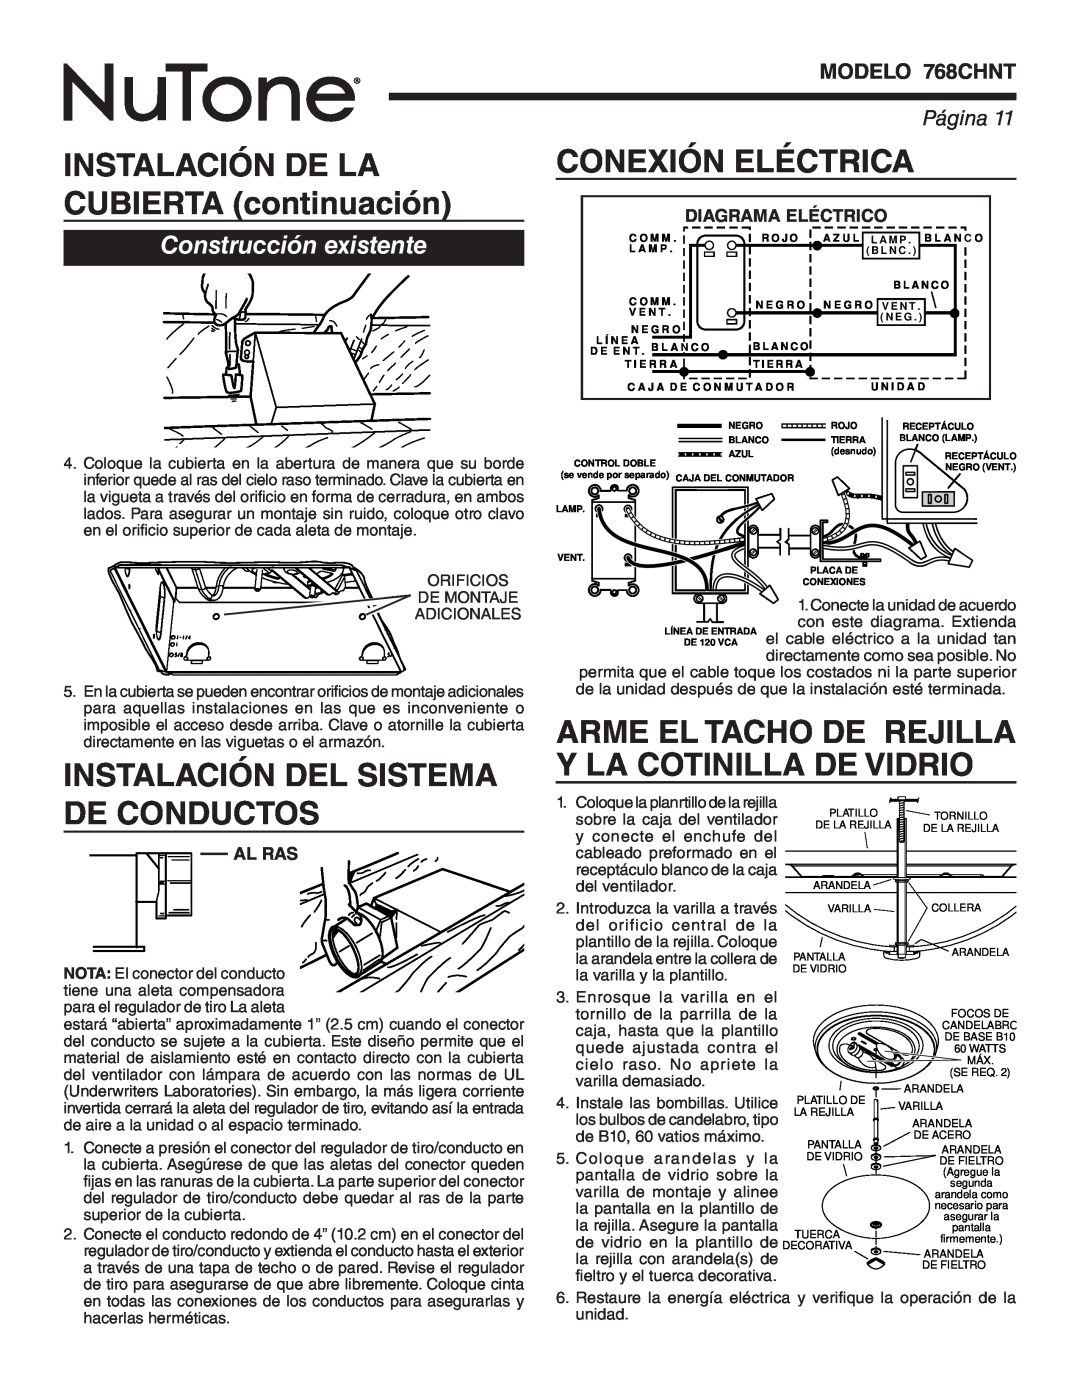 NuTone 768CHNT Instalación Del Sistema De Conductos, Conexión Eléctrica, Arme El Tacho De Rejilla Y La Cotinilla De Vidrio 